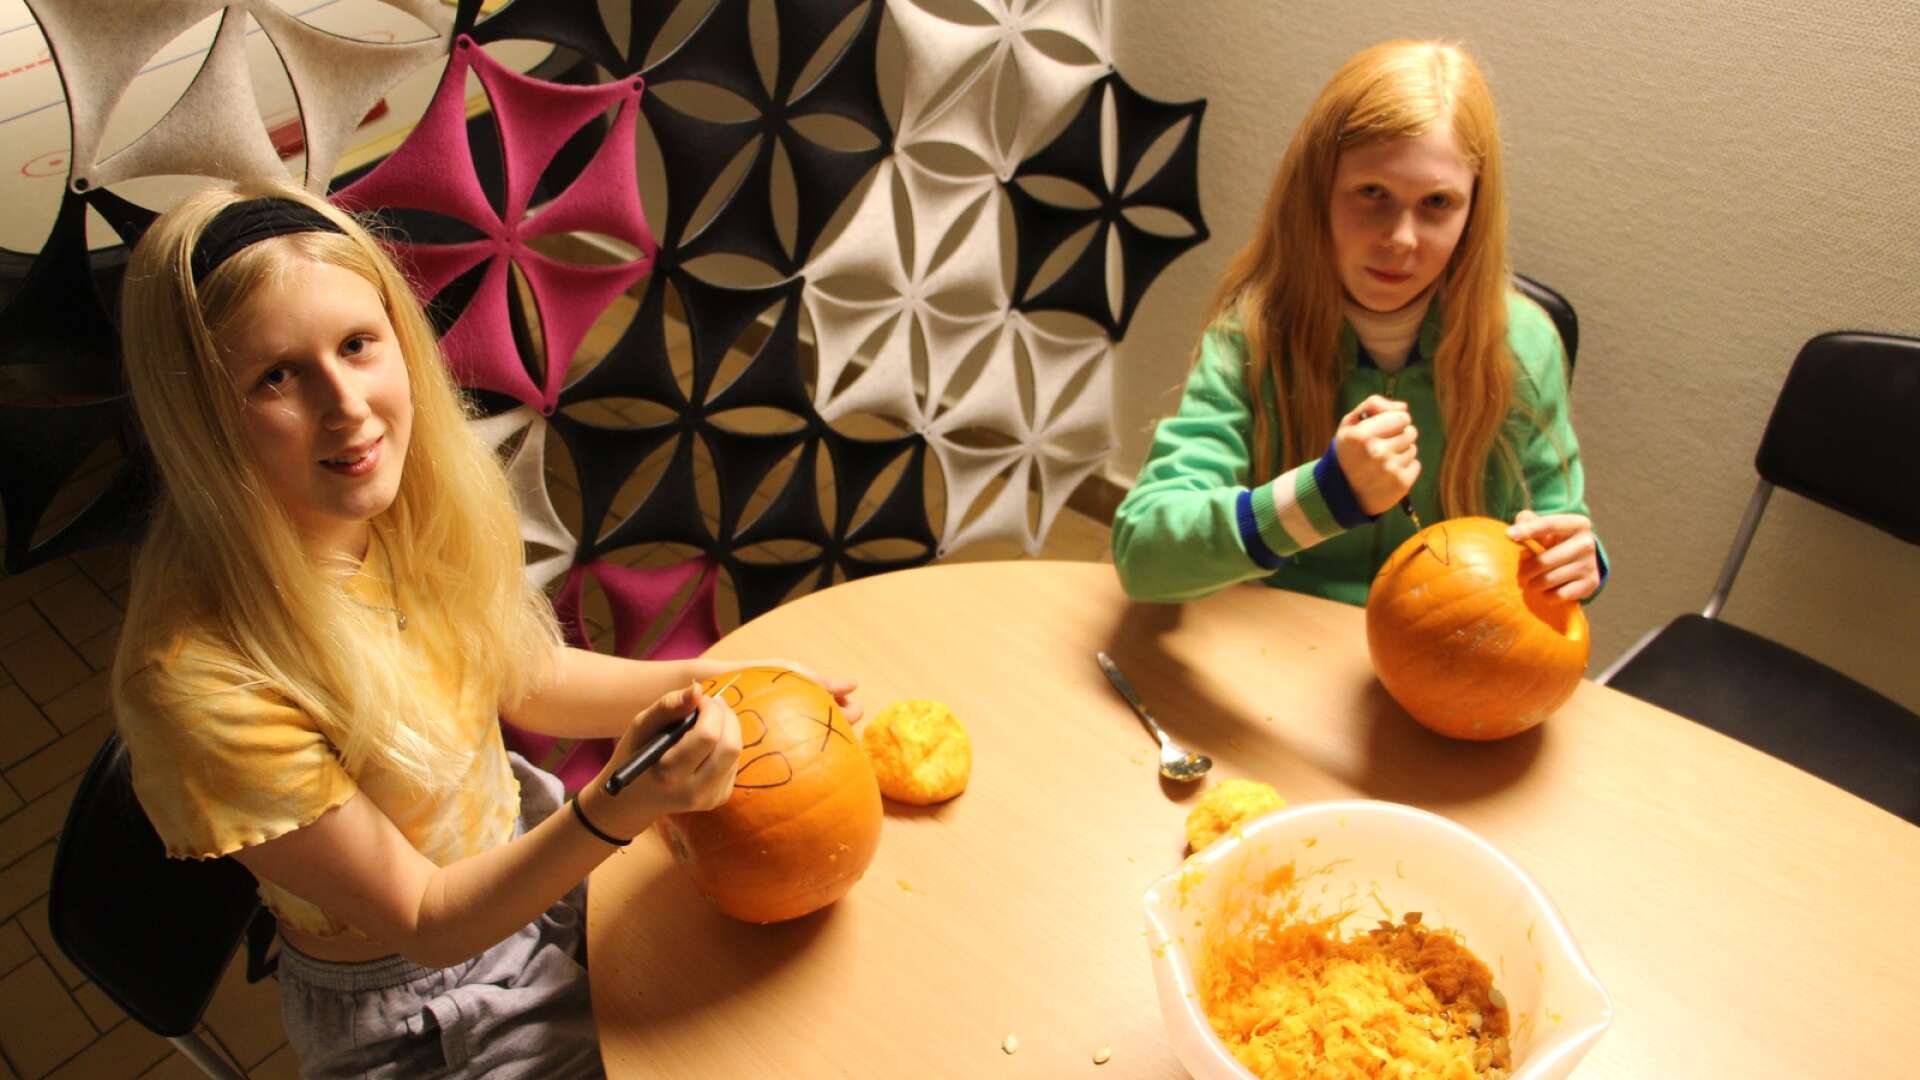 Klasskompisarna Lena Strandberg och Iris Bohnsack från Skövde hade tagit sig an uppgiften att få till en riktig Halloween-pumpa.